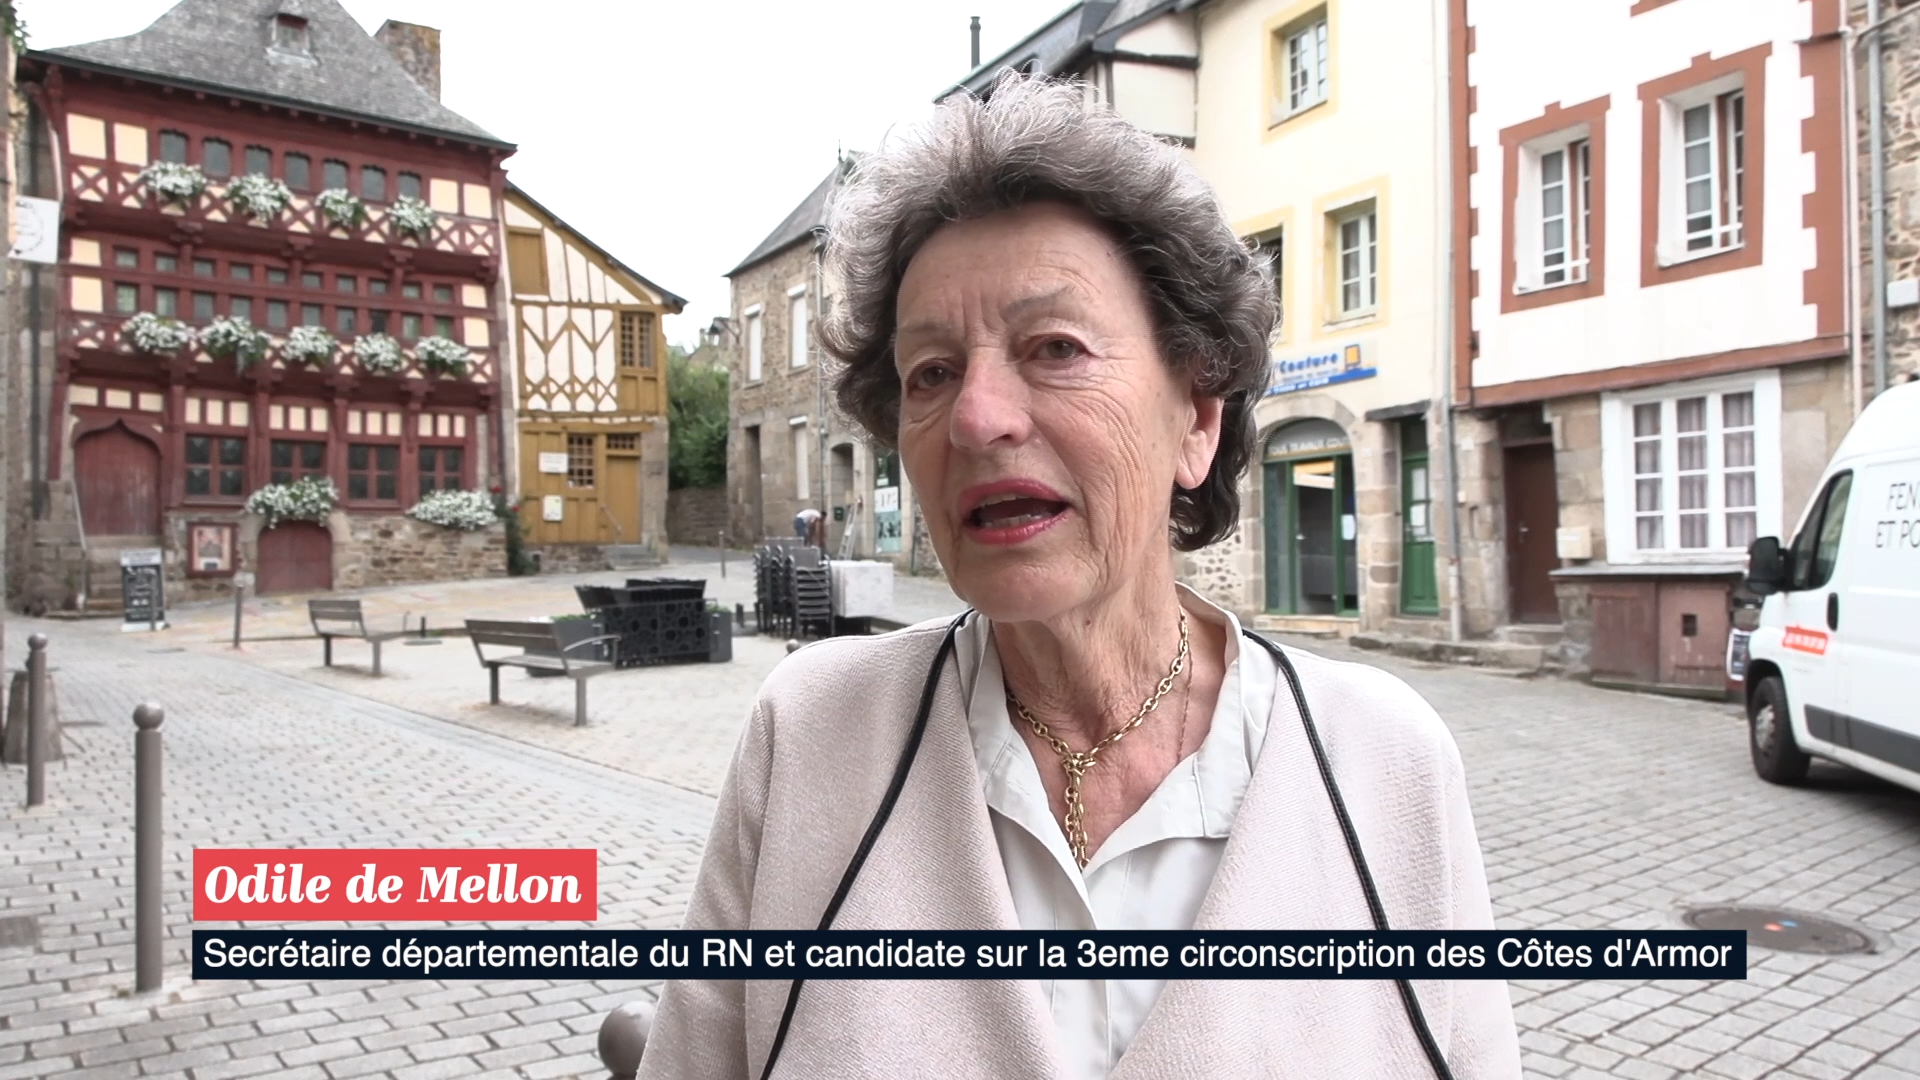 Législatives : réaction d'Odile de Mellon, secrétaire du RN dans les Côtes-d'Armor [Vidéo]